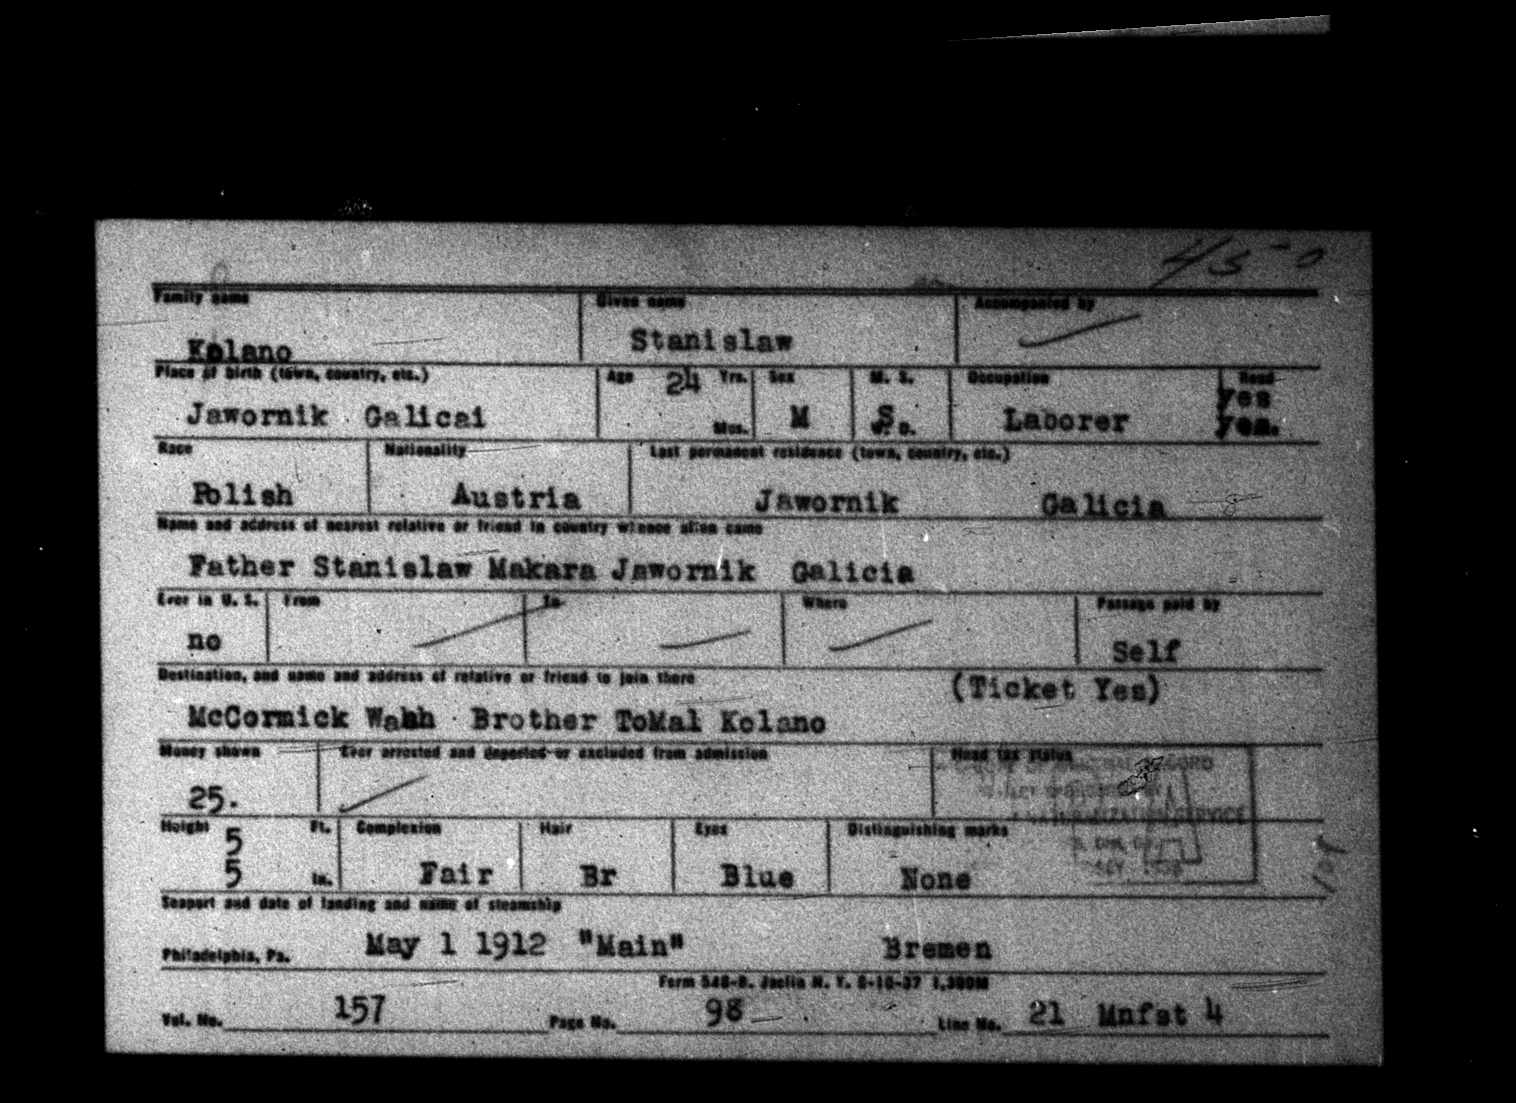 Stanislaw Kalano Kolano ship ticket 1912 copy